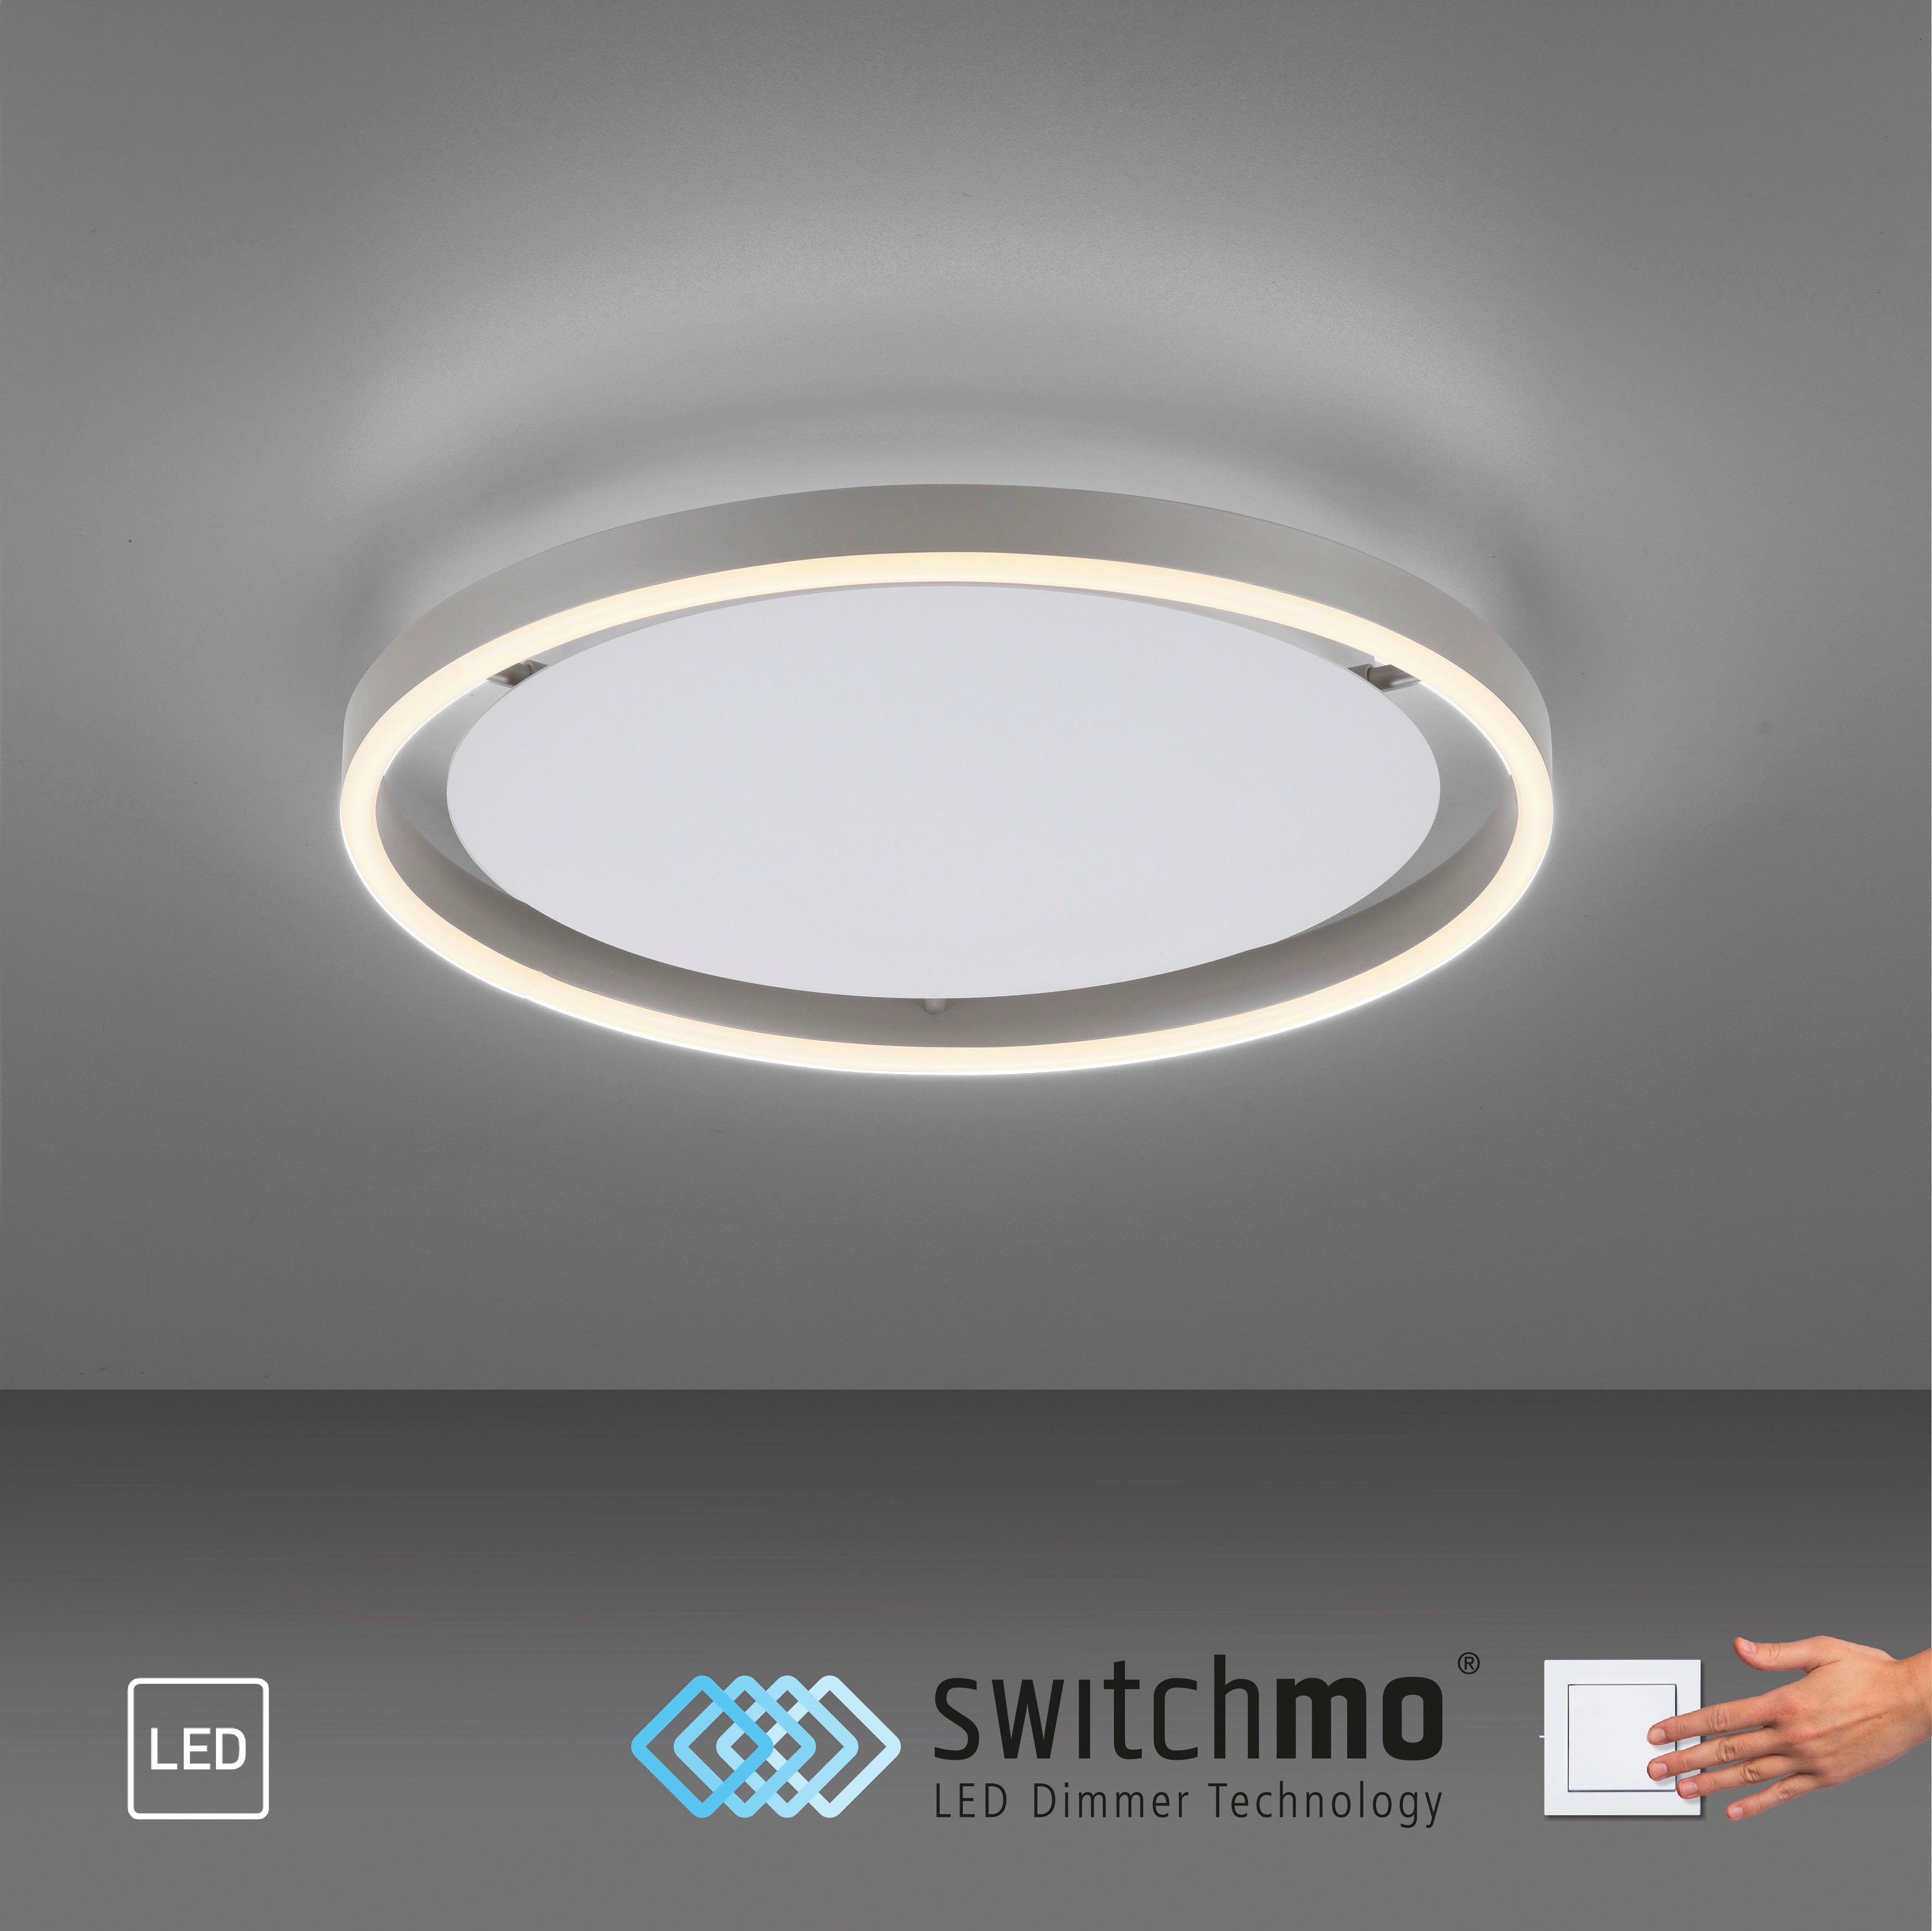 Warmweiß, fest LED, Direkt Switchmo Leuchten LED Deckenleuchte dimmbar, integriert, RITUS,